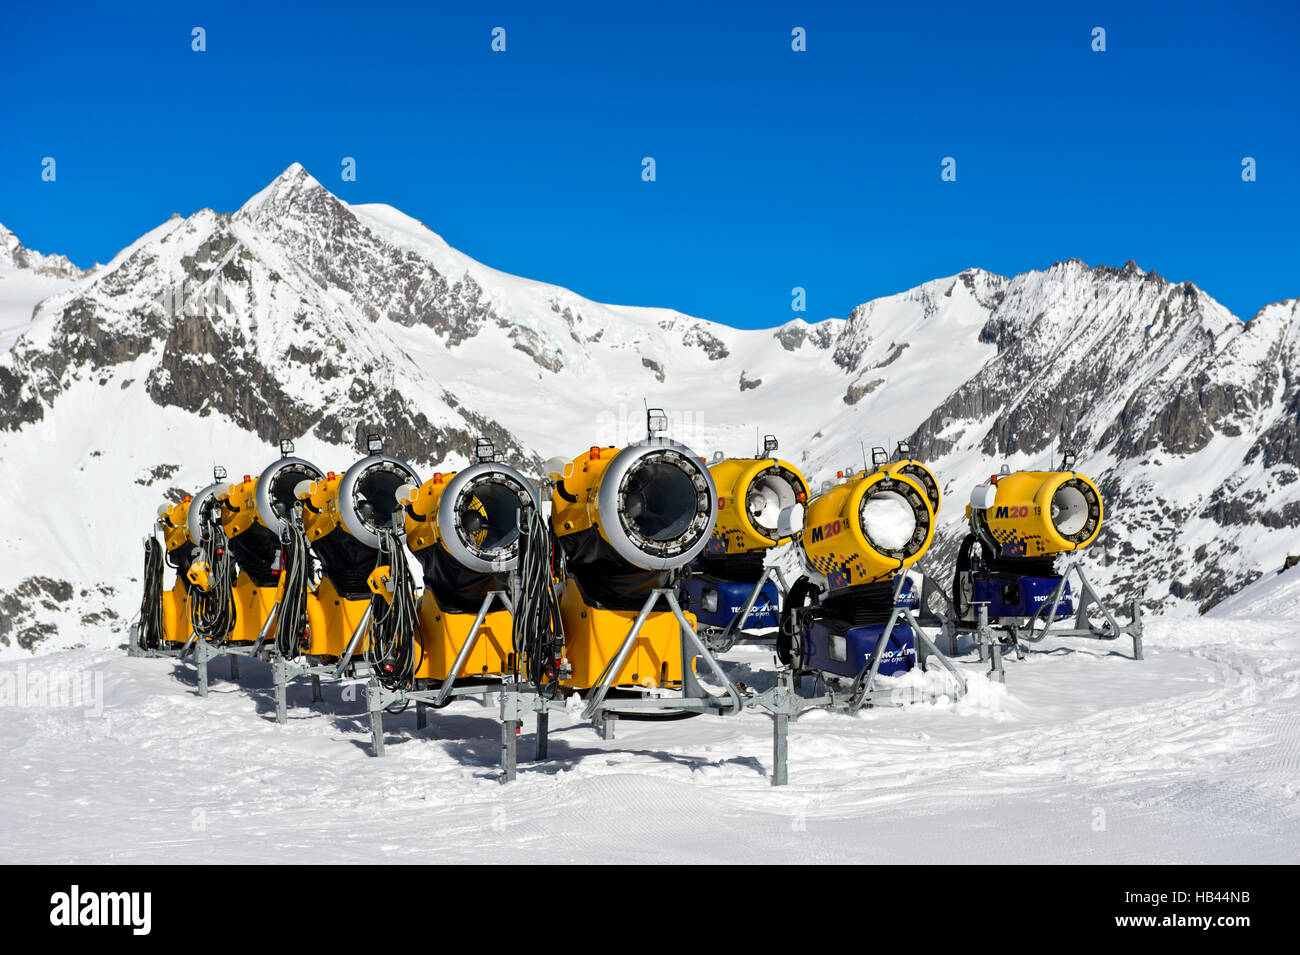 Batterie von TechnoAlpin Schneekanonen im Skigebiet Aletscharena,  Bettmeralp, Wallis, Schweiz Stockfotografie - Alamy